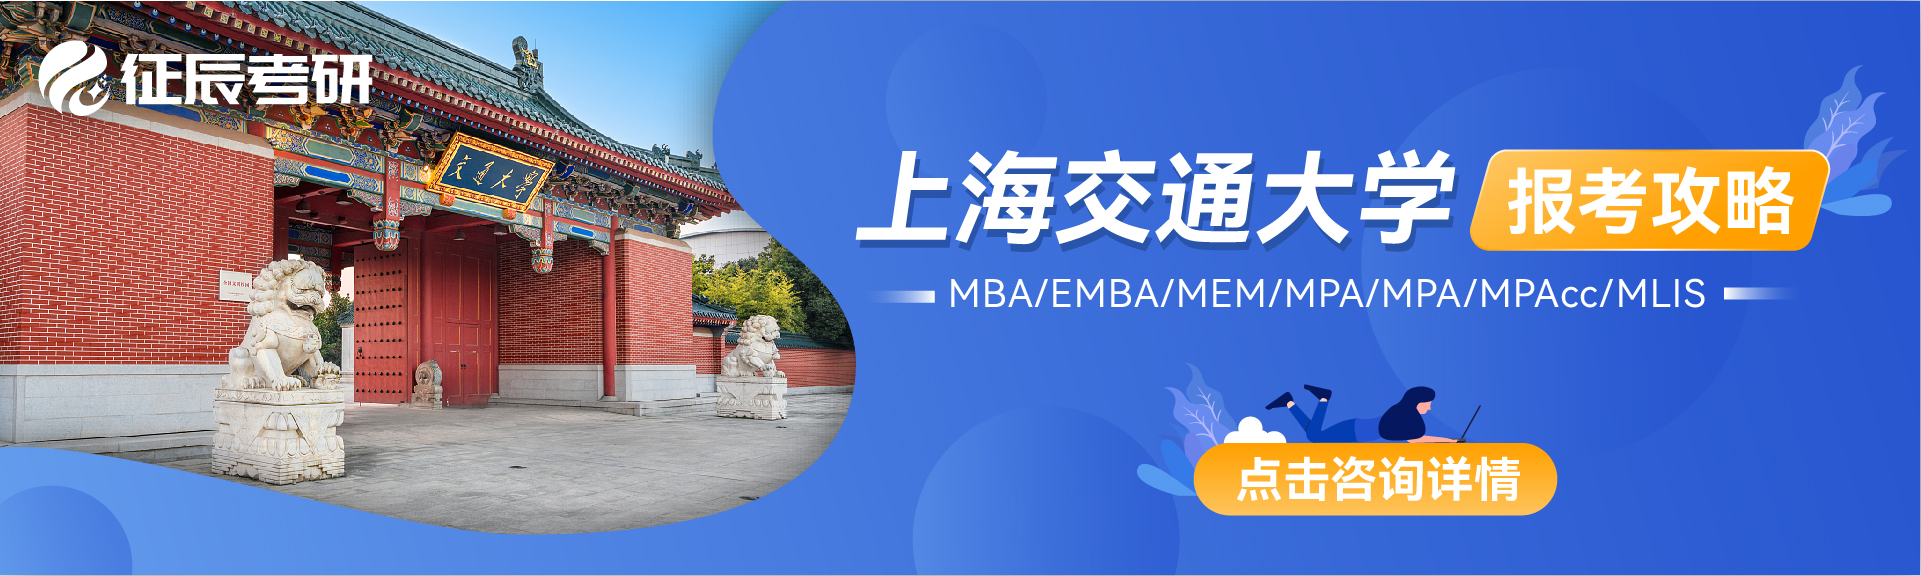 2022年入学上海交通大学MBA/EMBA/MPA/MPAcc/MEM项目介绍